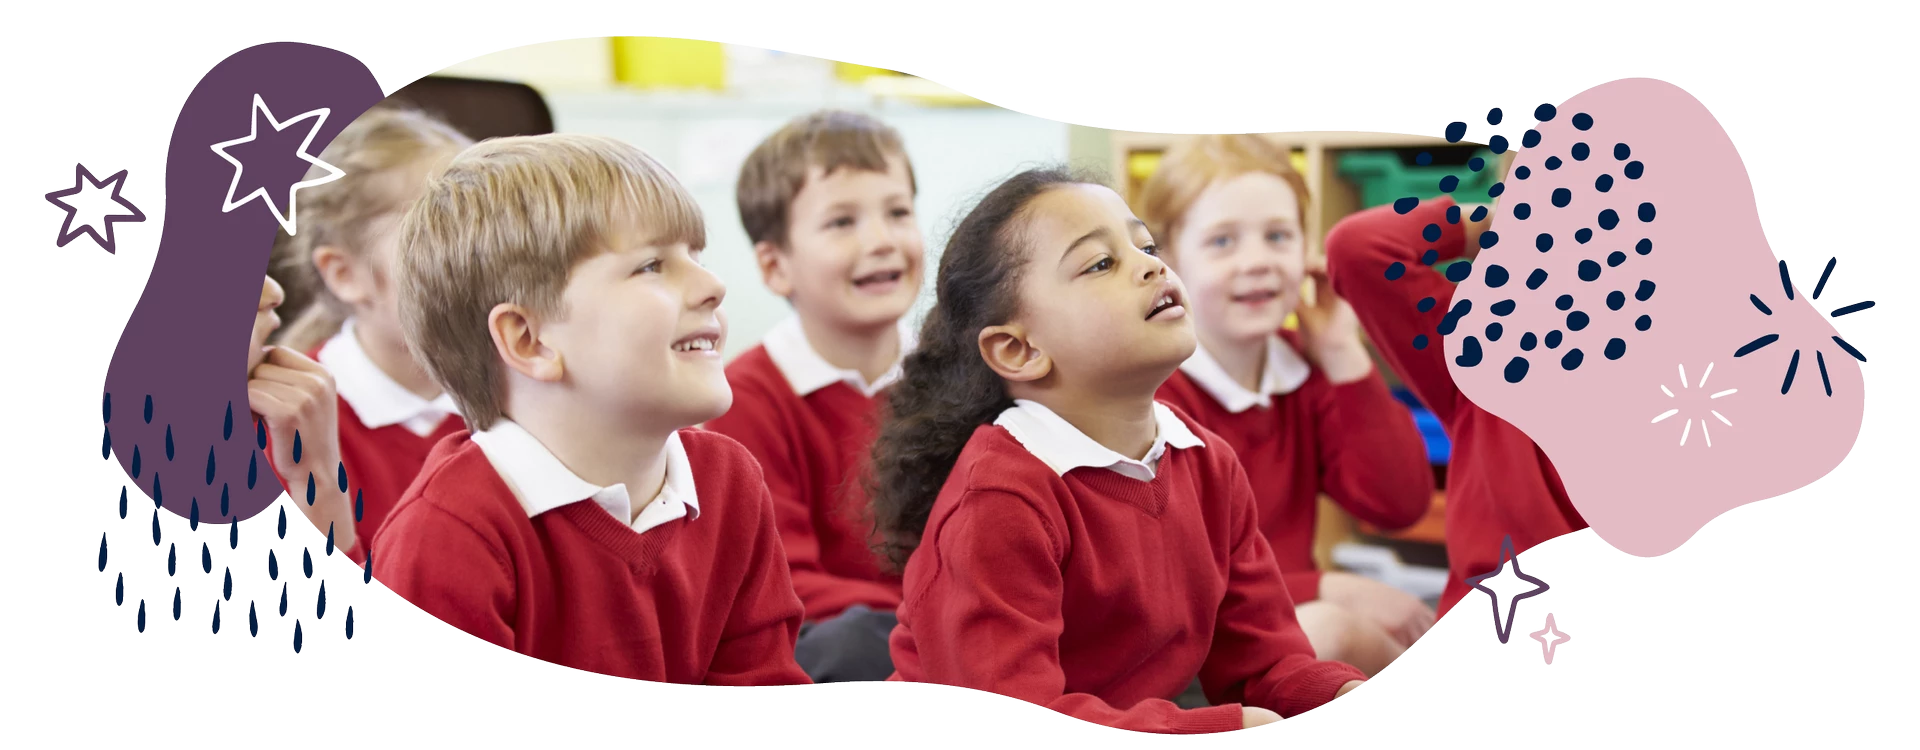 تضمین پیشرفت تحصیلی کودکان با یادگیری زبان انگلیسی